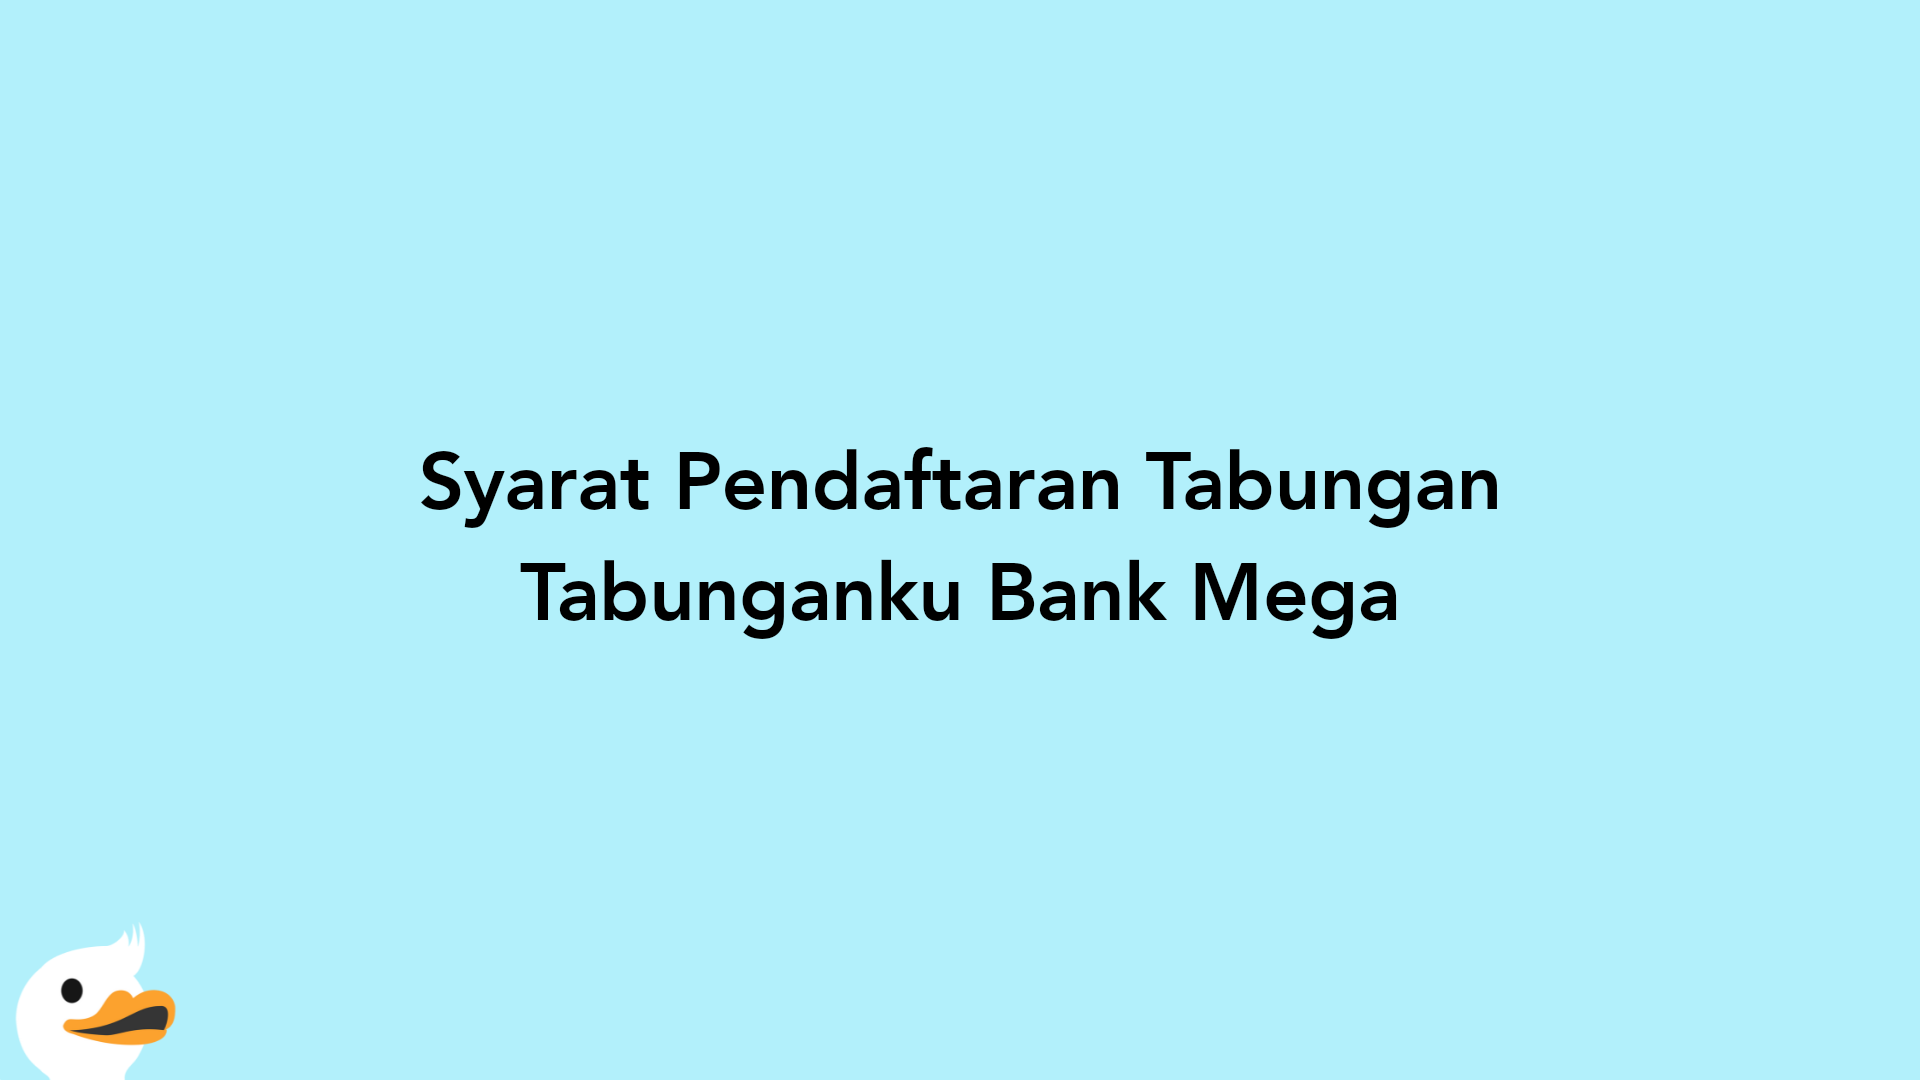 Syarat Pendaftaran Tabungan Tabunganku Bank Mega